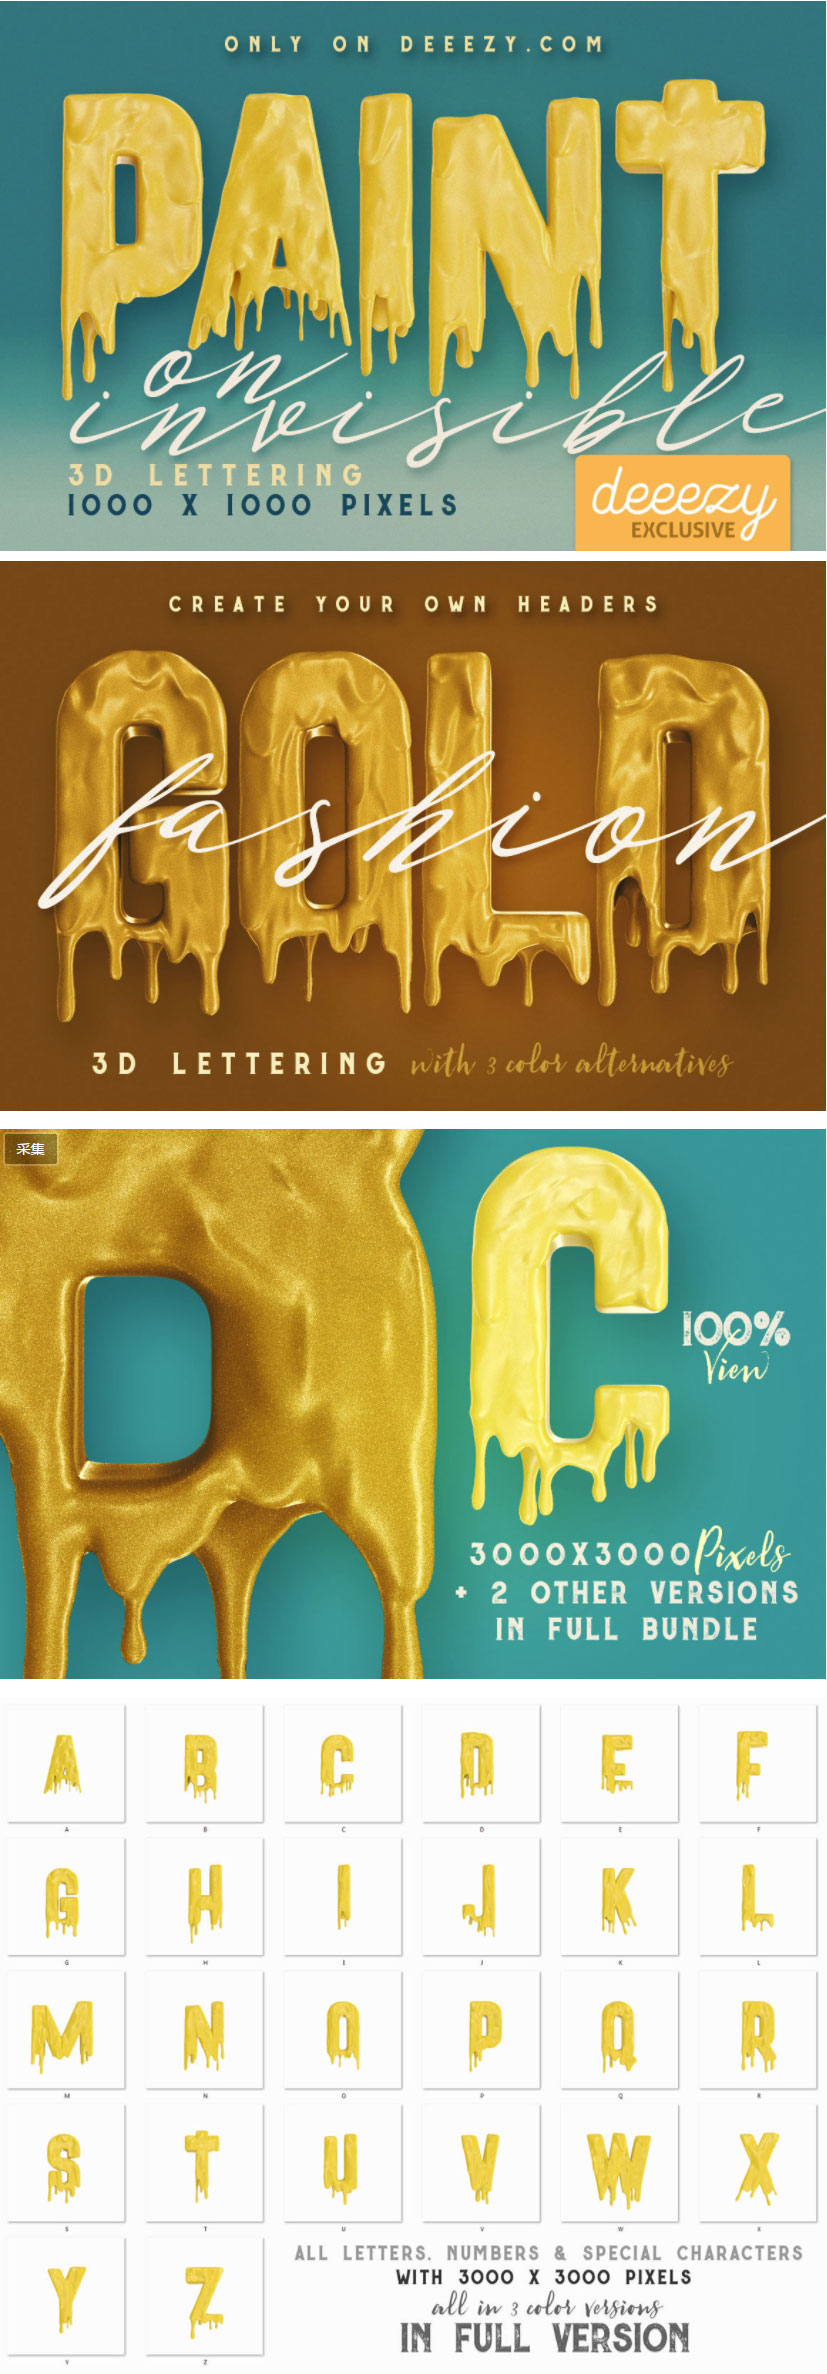 有趣的油漆桶捞起的3D字母 Painting On Invisible Free 3D Lettering